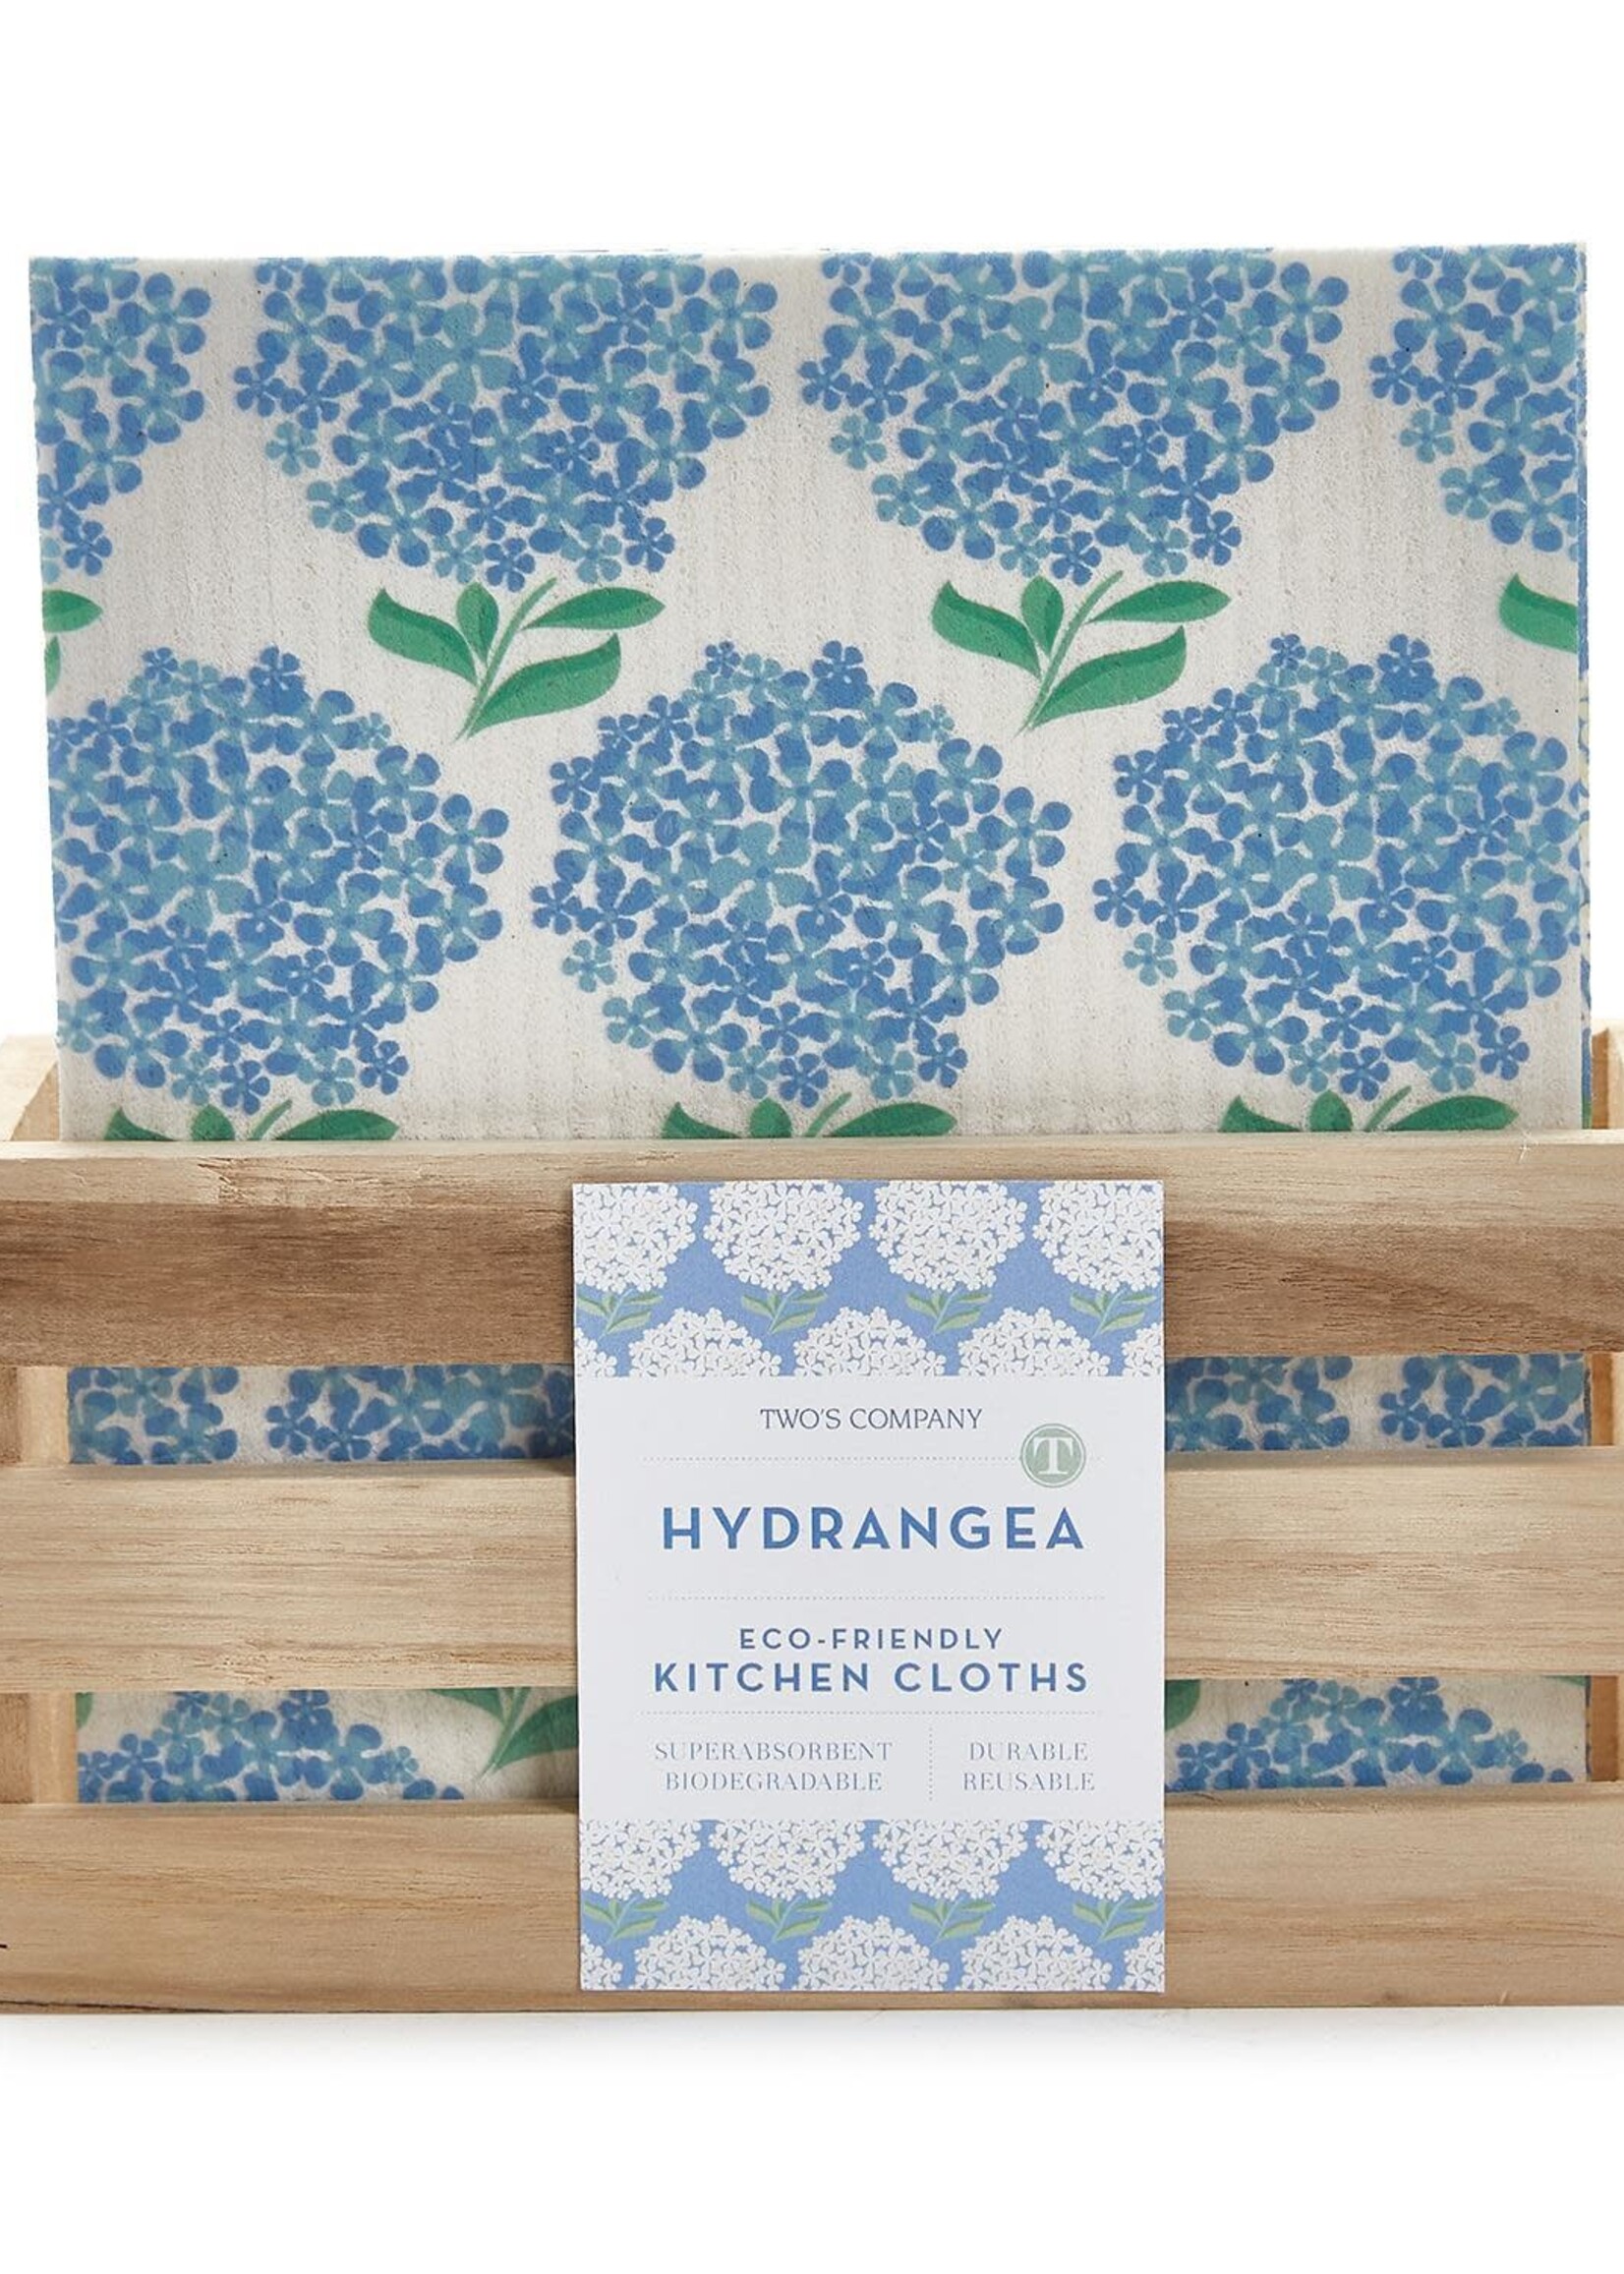 Two’s Company Hydrangea Multipurpose Biodegradable Kitchen Cloth